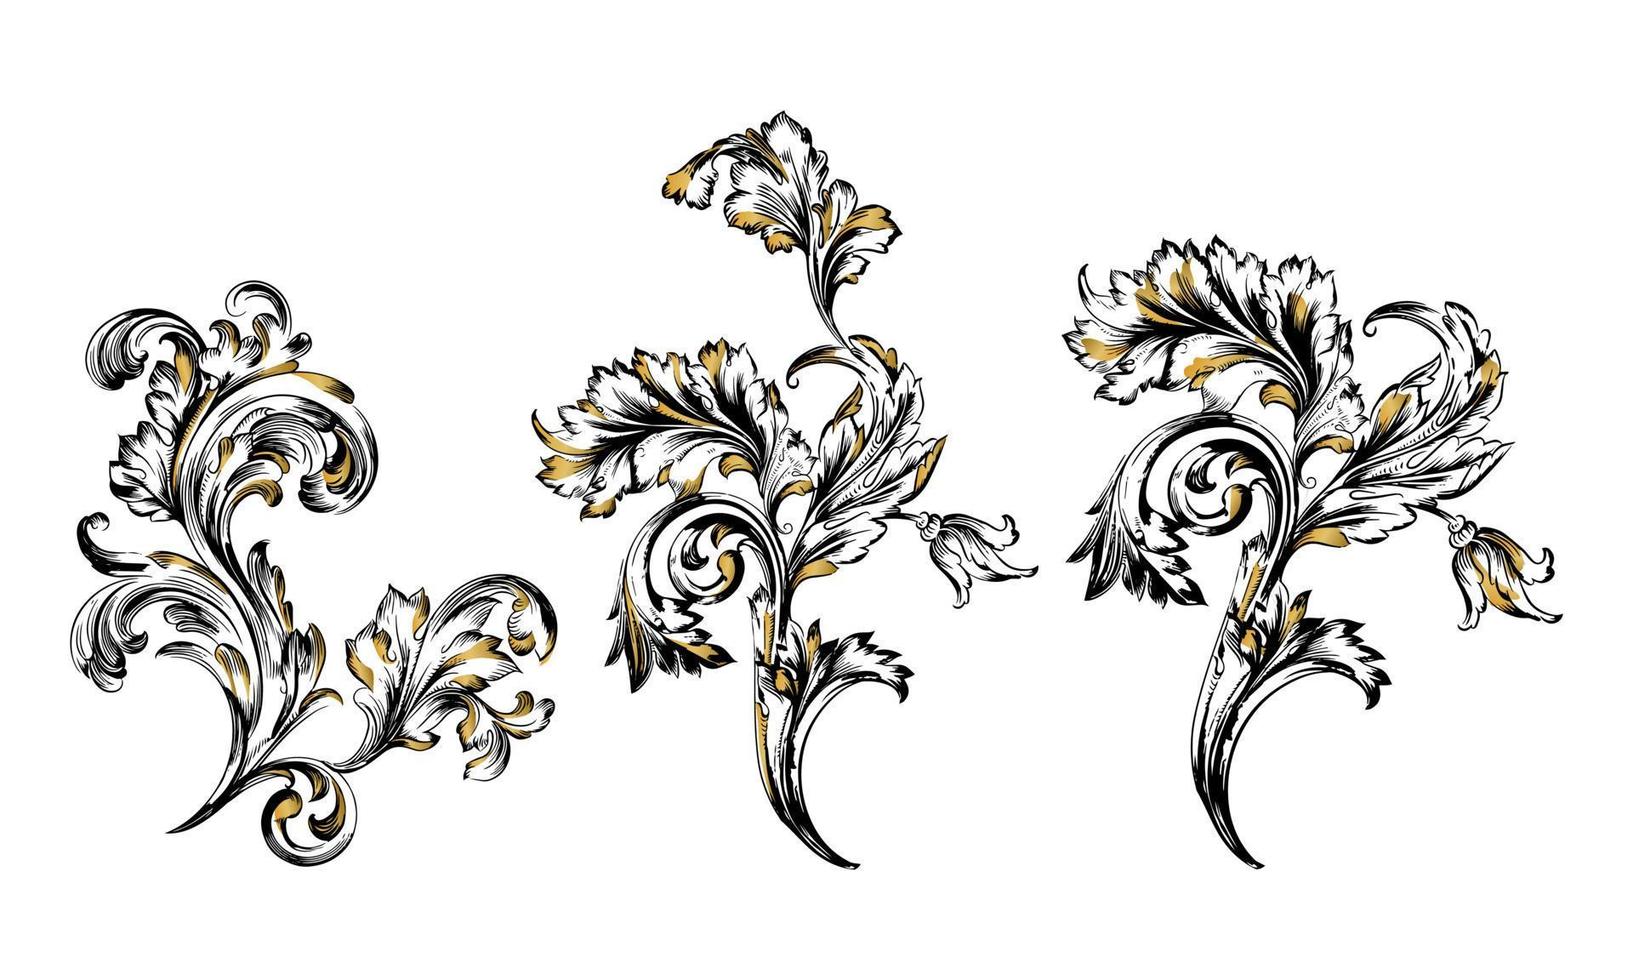 dekorative Blumenvektorillustration lokalisiert auf weißem Hintergrund vektor